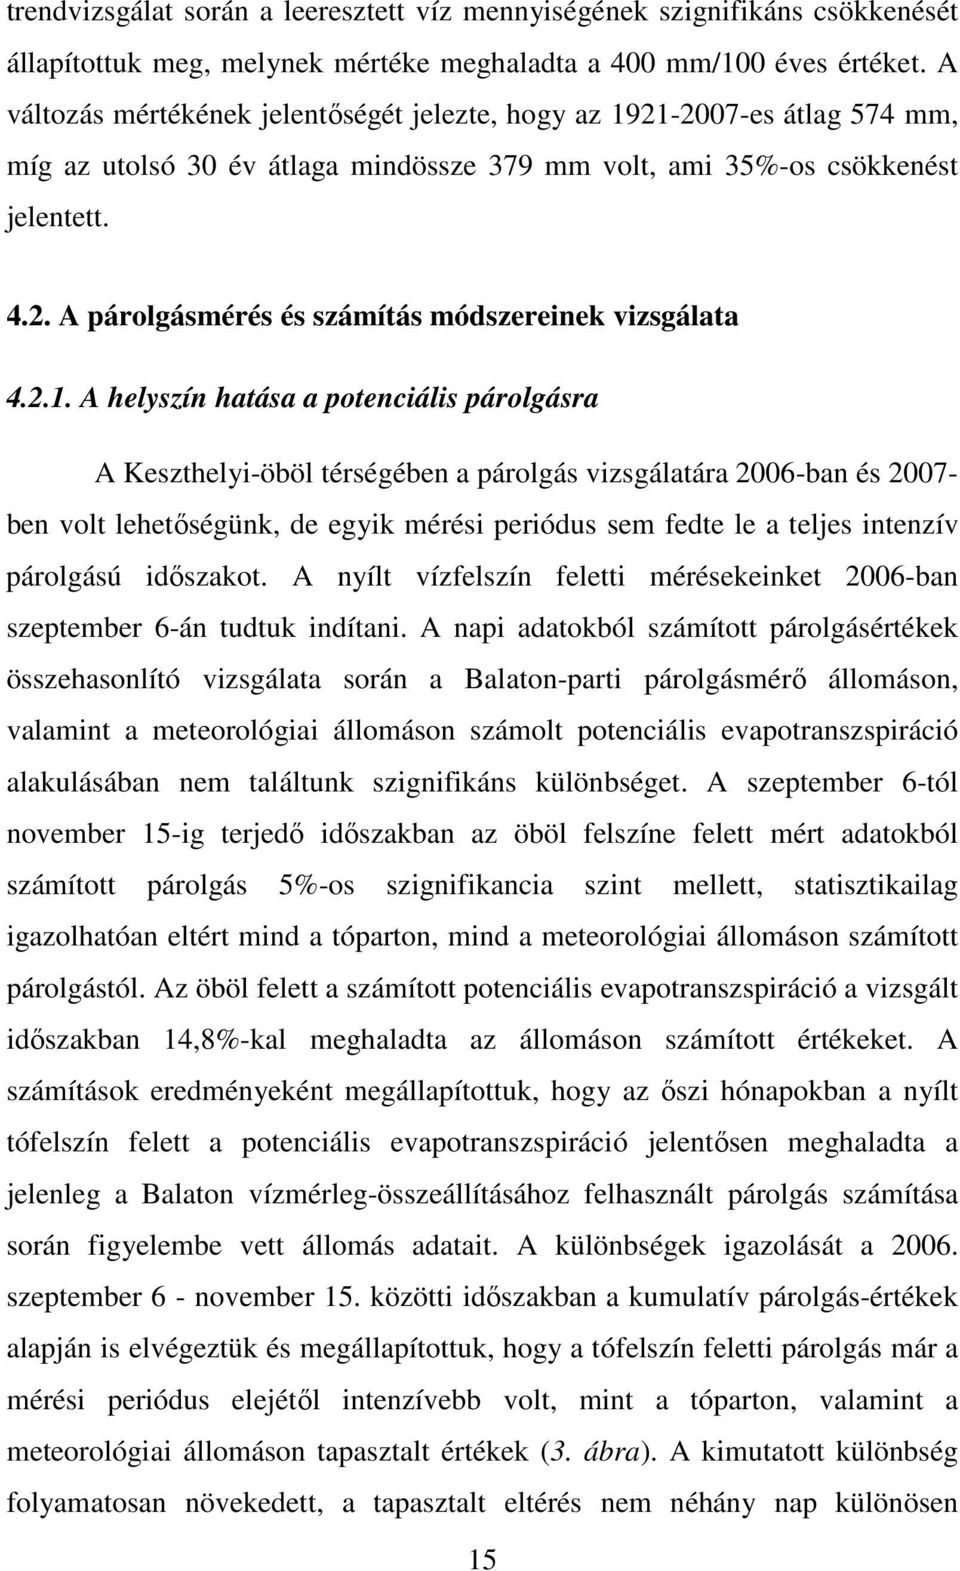 2.1. A helyszín hatása a potenciális párolgásra A Keszthelyi-öböl térségében a párolgás vizsgálatára 2006-ban és 2007- ben volt lehetıségünk, de egyik mérési periódus sem fedte le a teljes intenzív